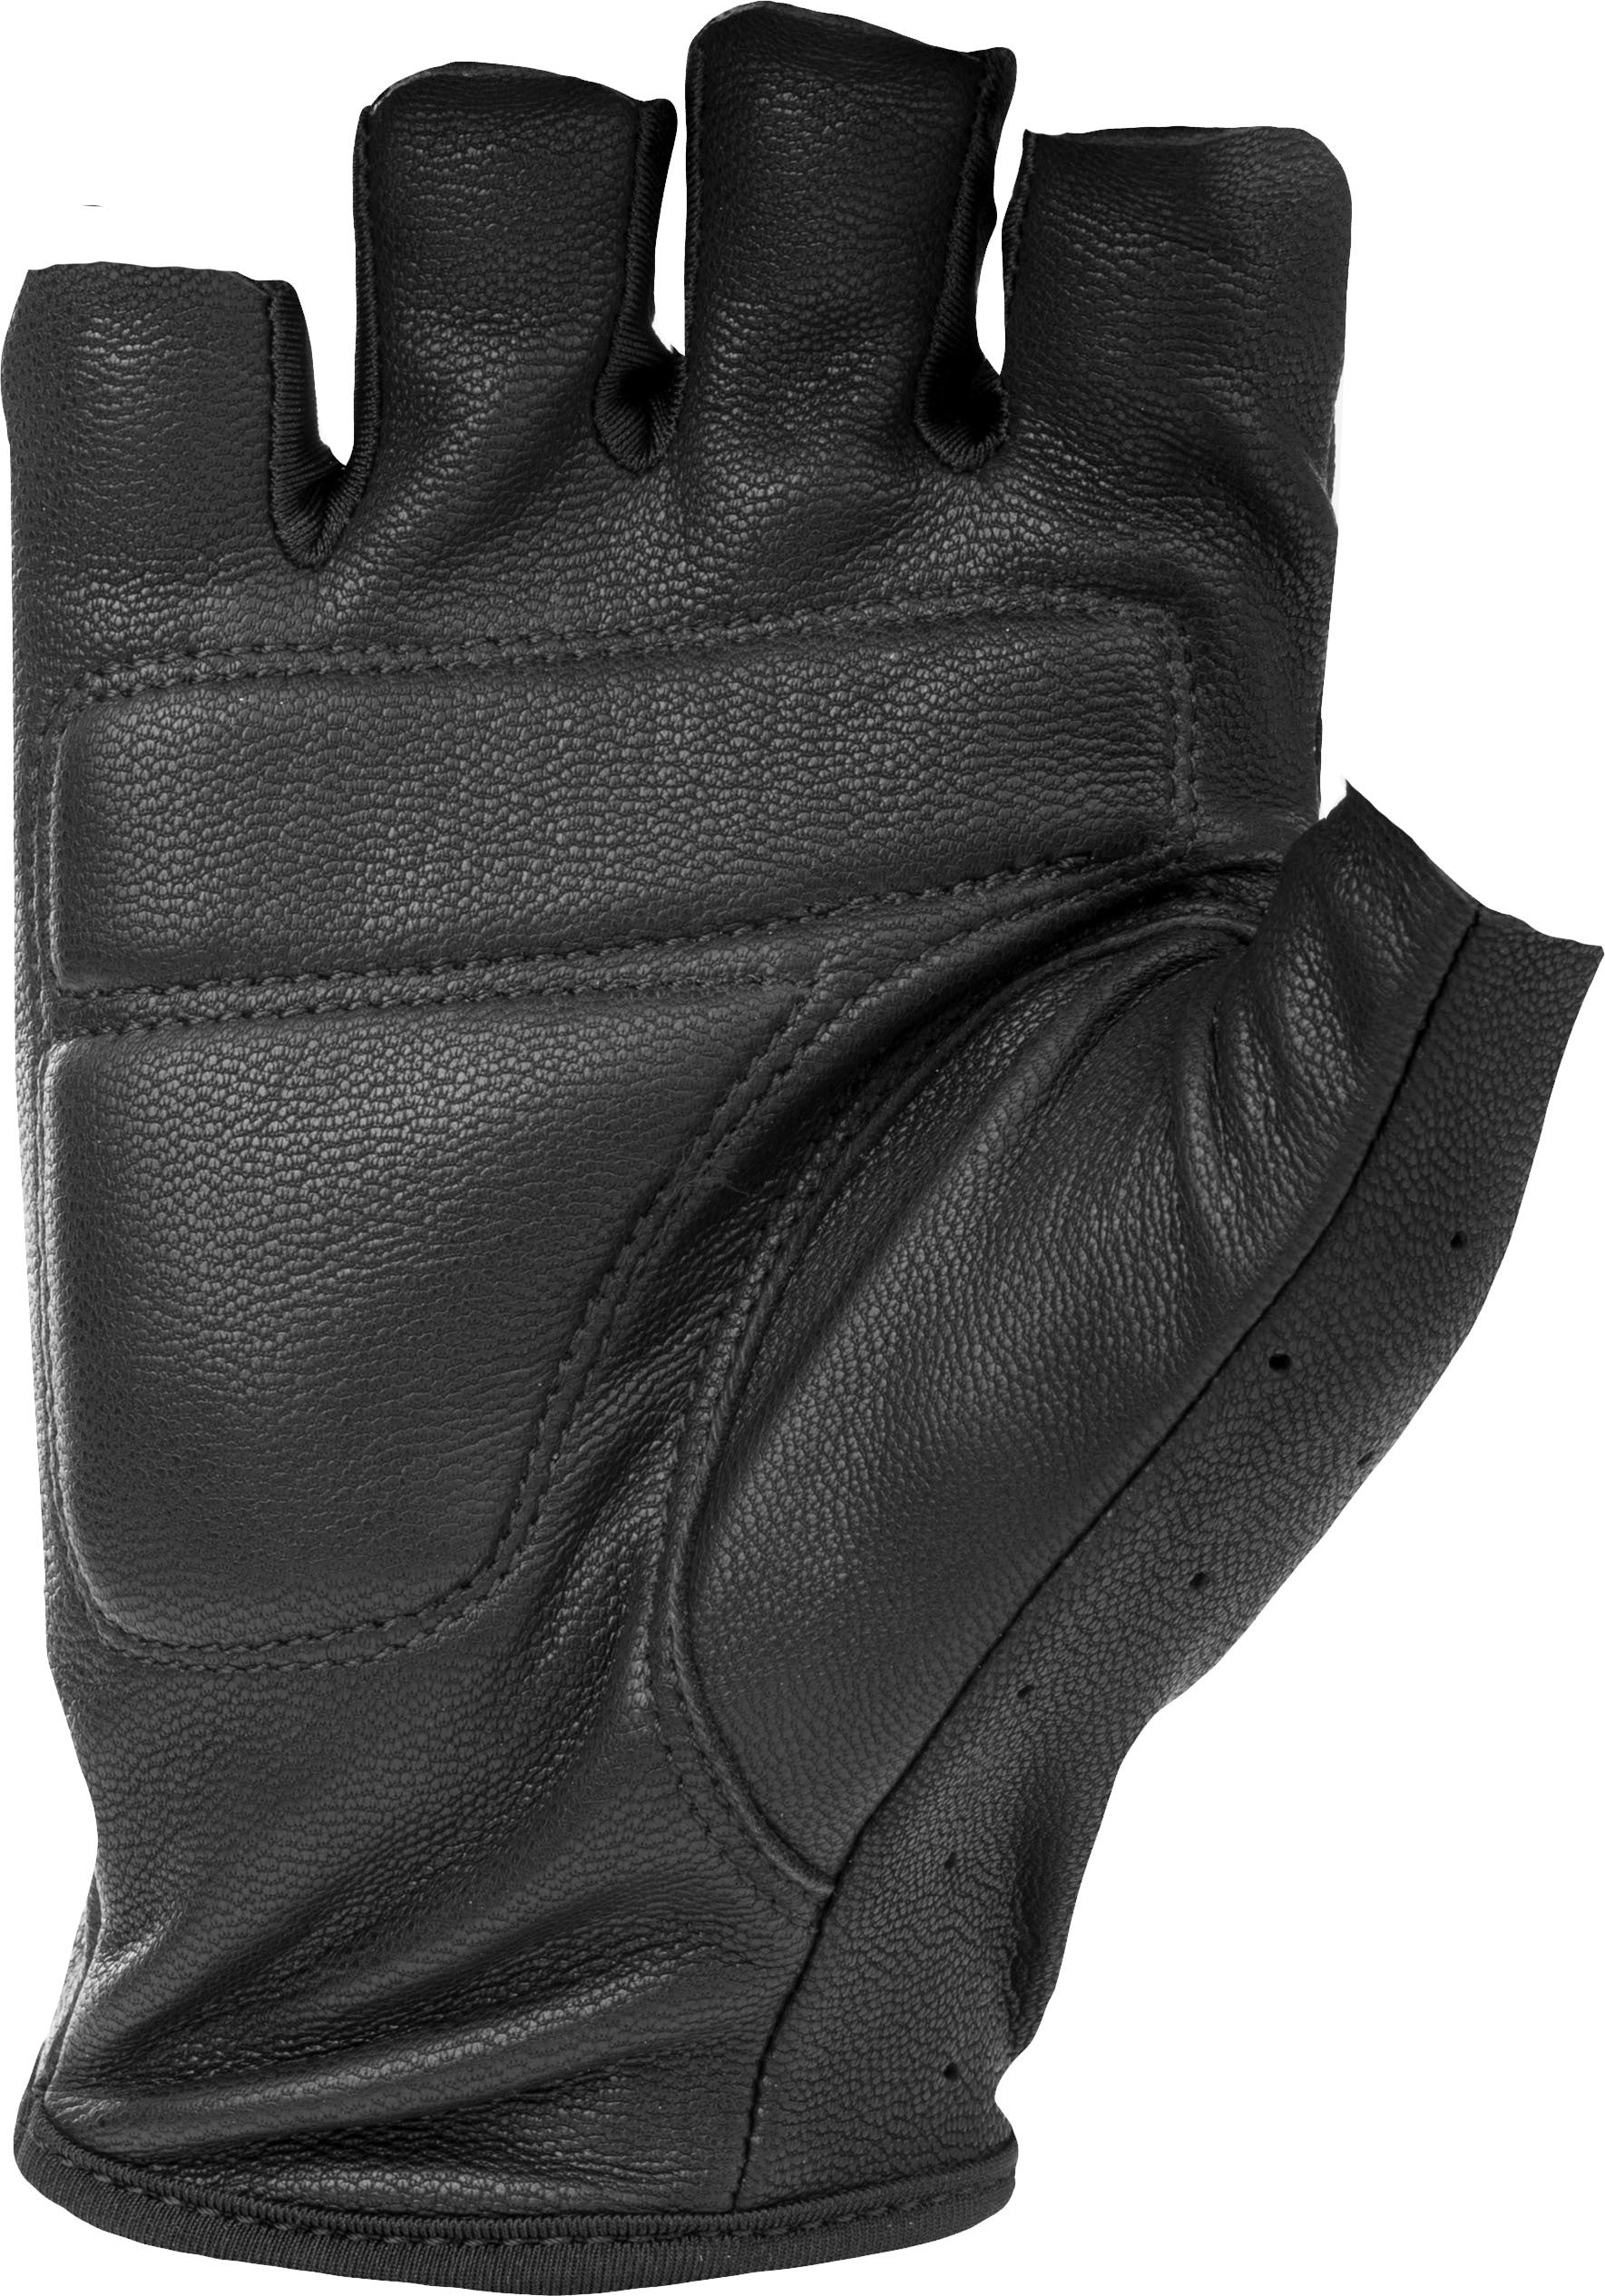 Ranger Gloves Black 4x